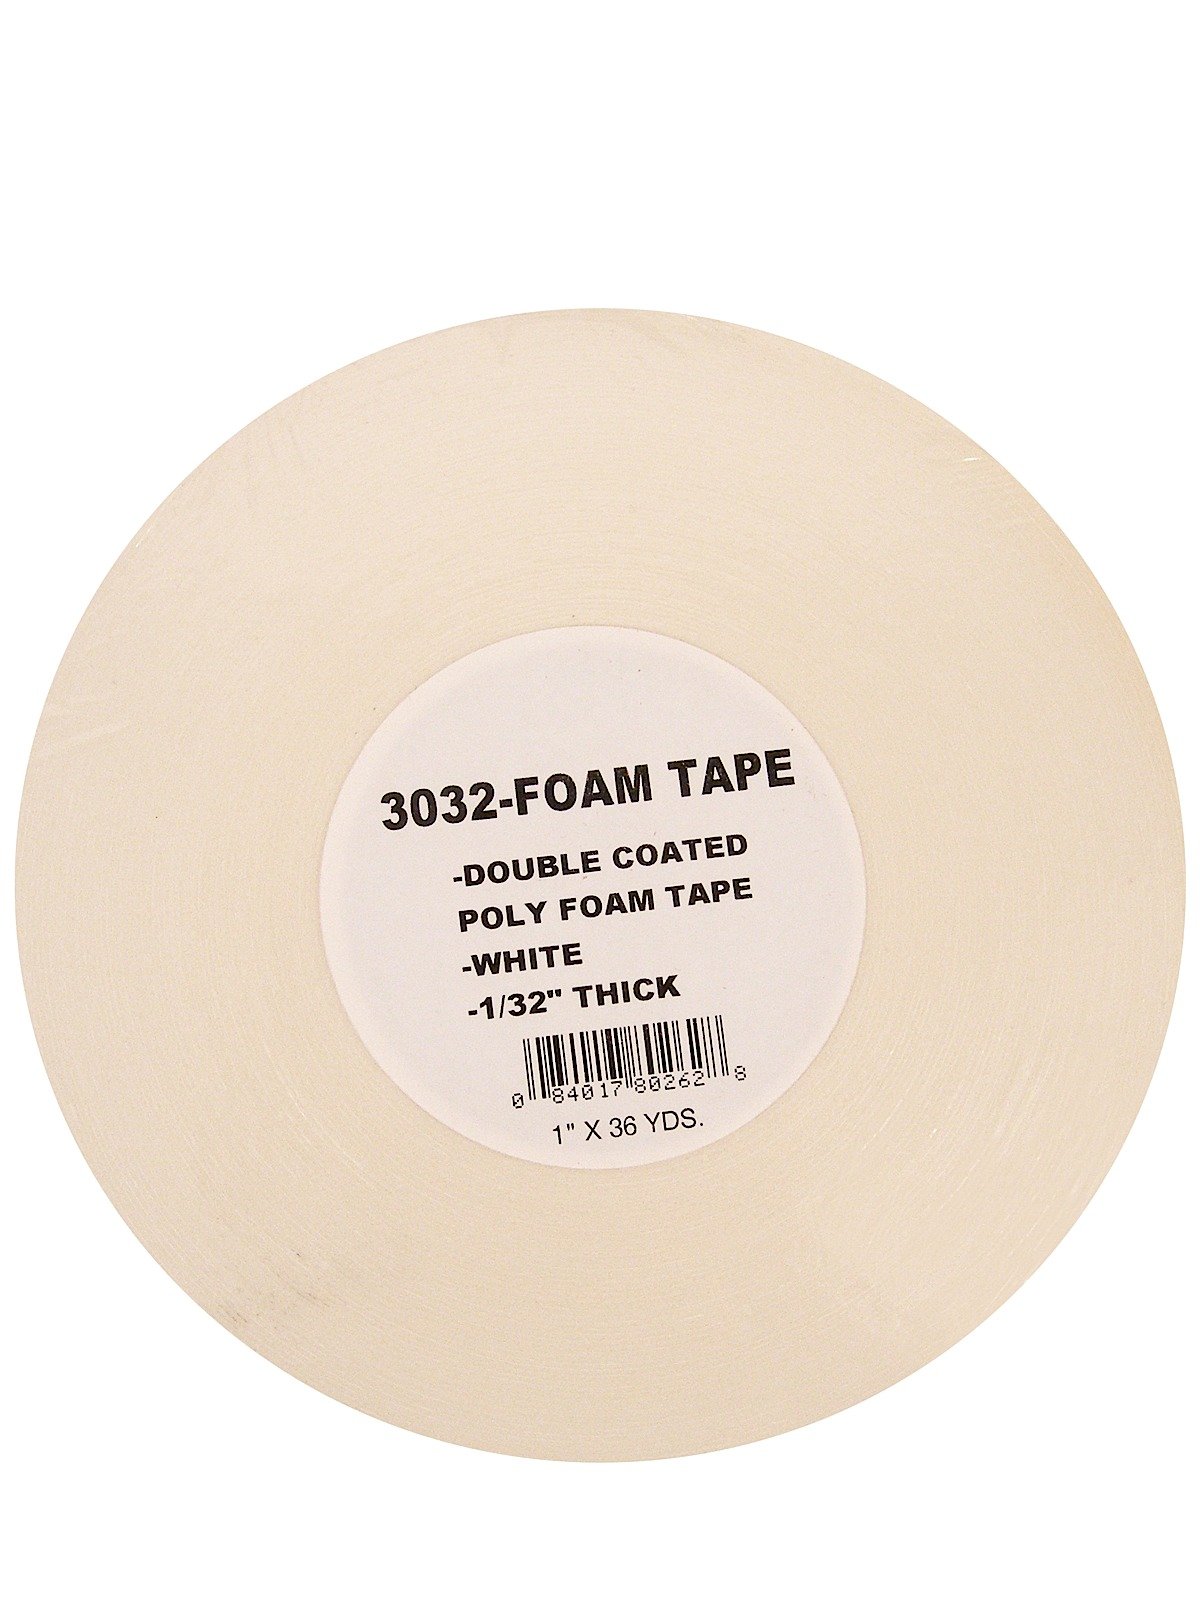 Pro Tapes - Foam Tape